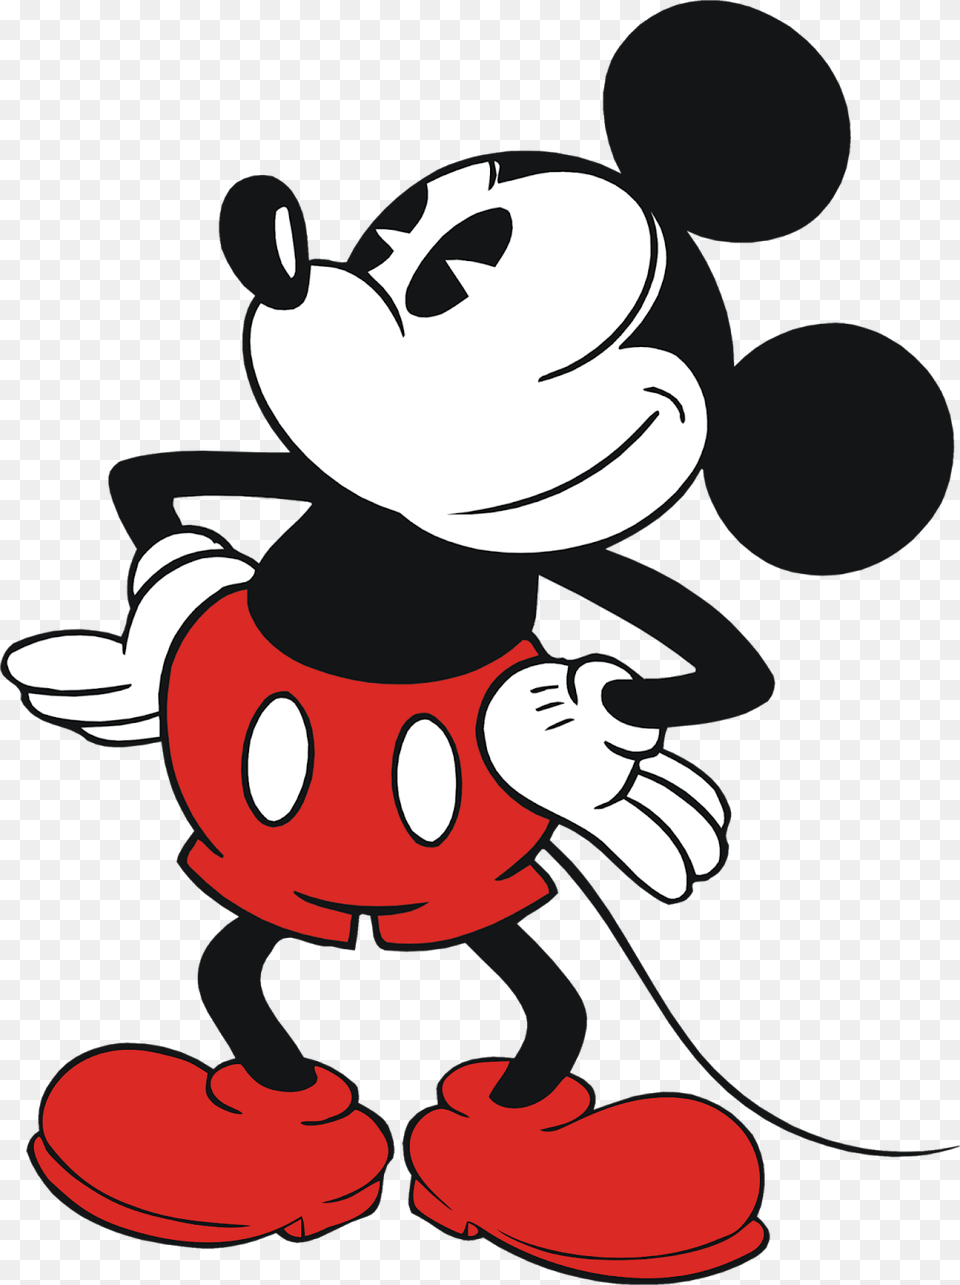 Vector De Mickey Mouse, Cartoon, Baby, Person, Face Png